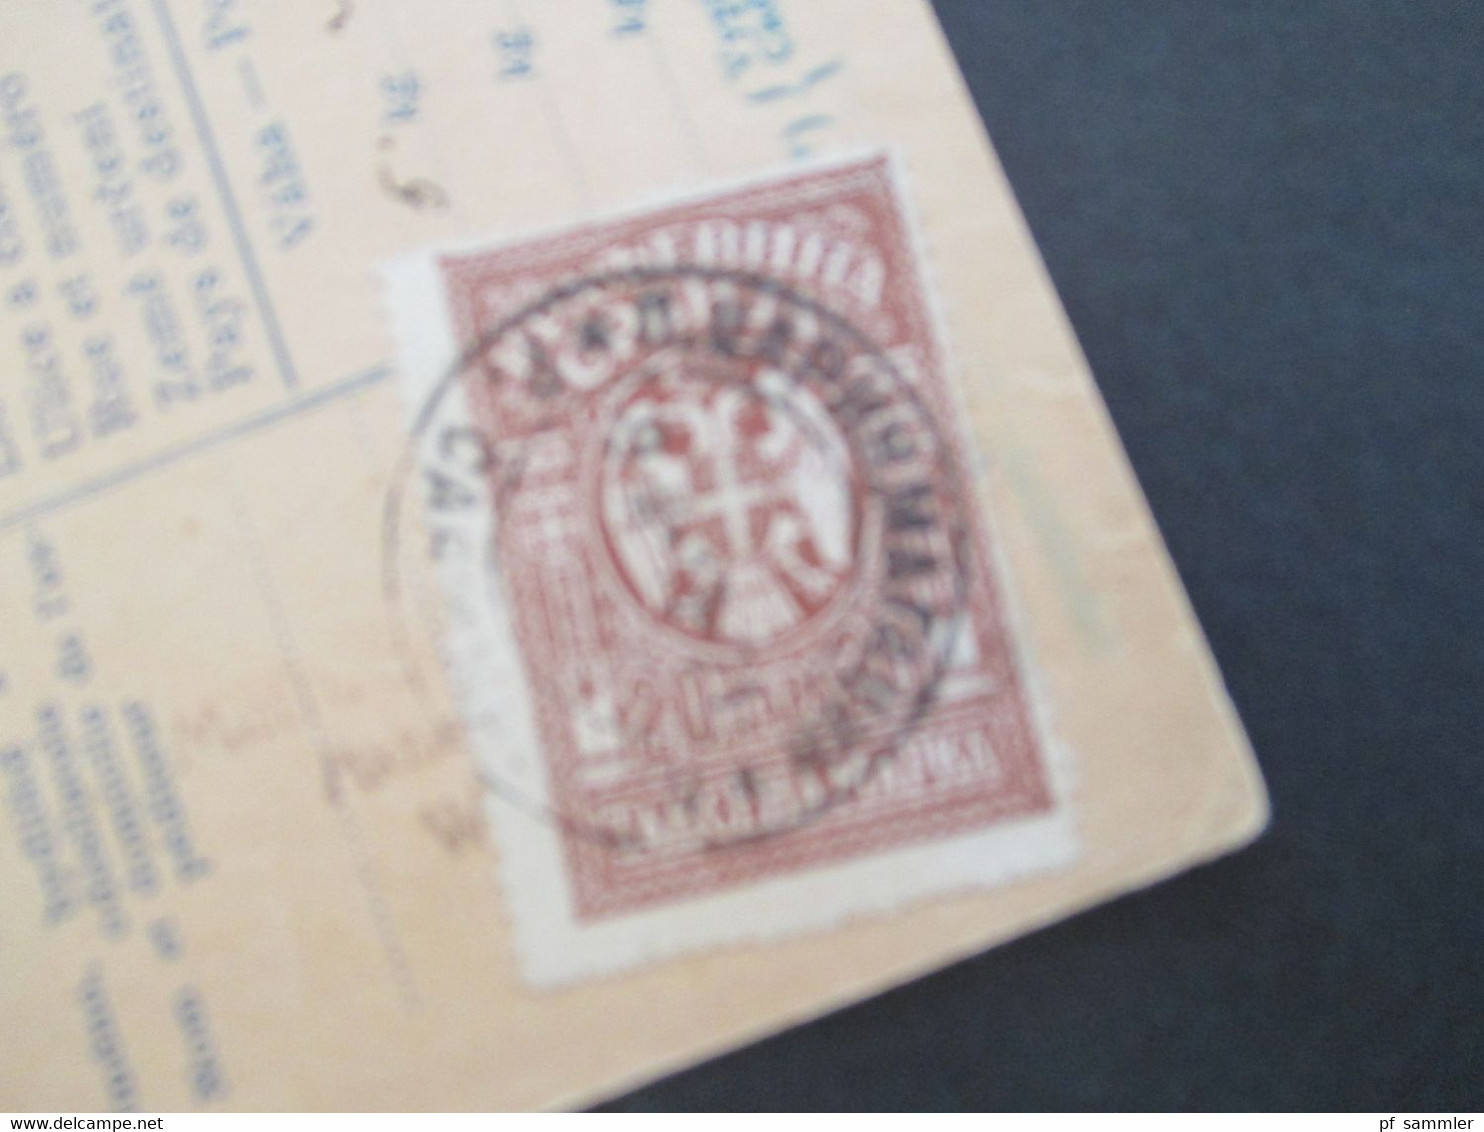 CSSR 1921 Hradschin Mucha 3er Streifen Paketkarte Wagstadt Sudetenland mit Steuermarke und vielen Stempeln